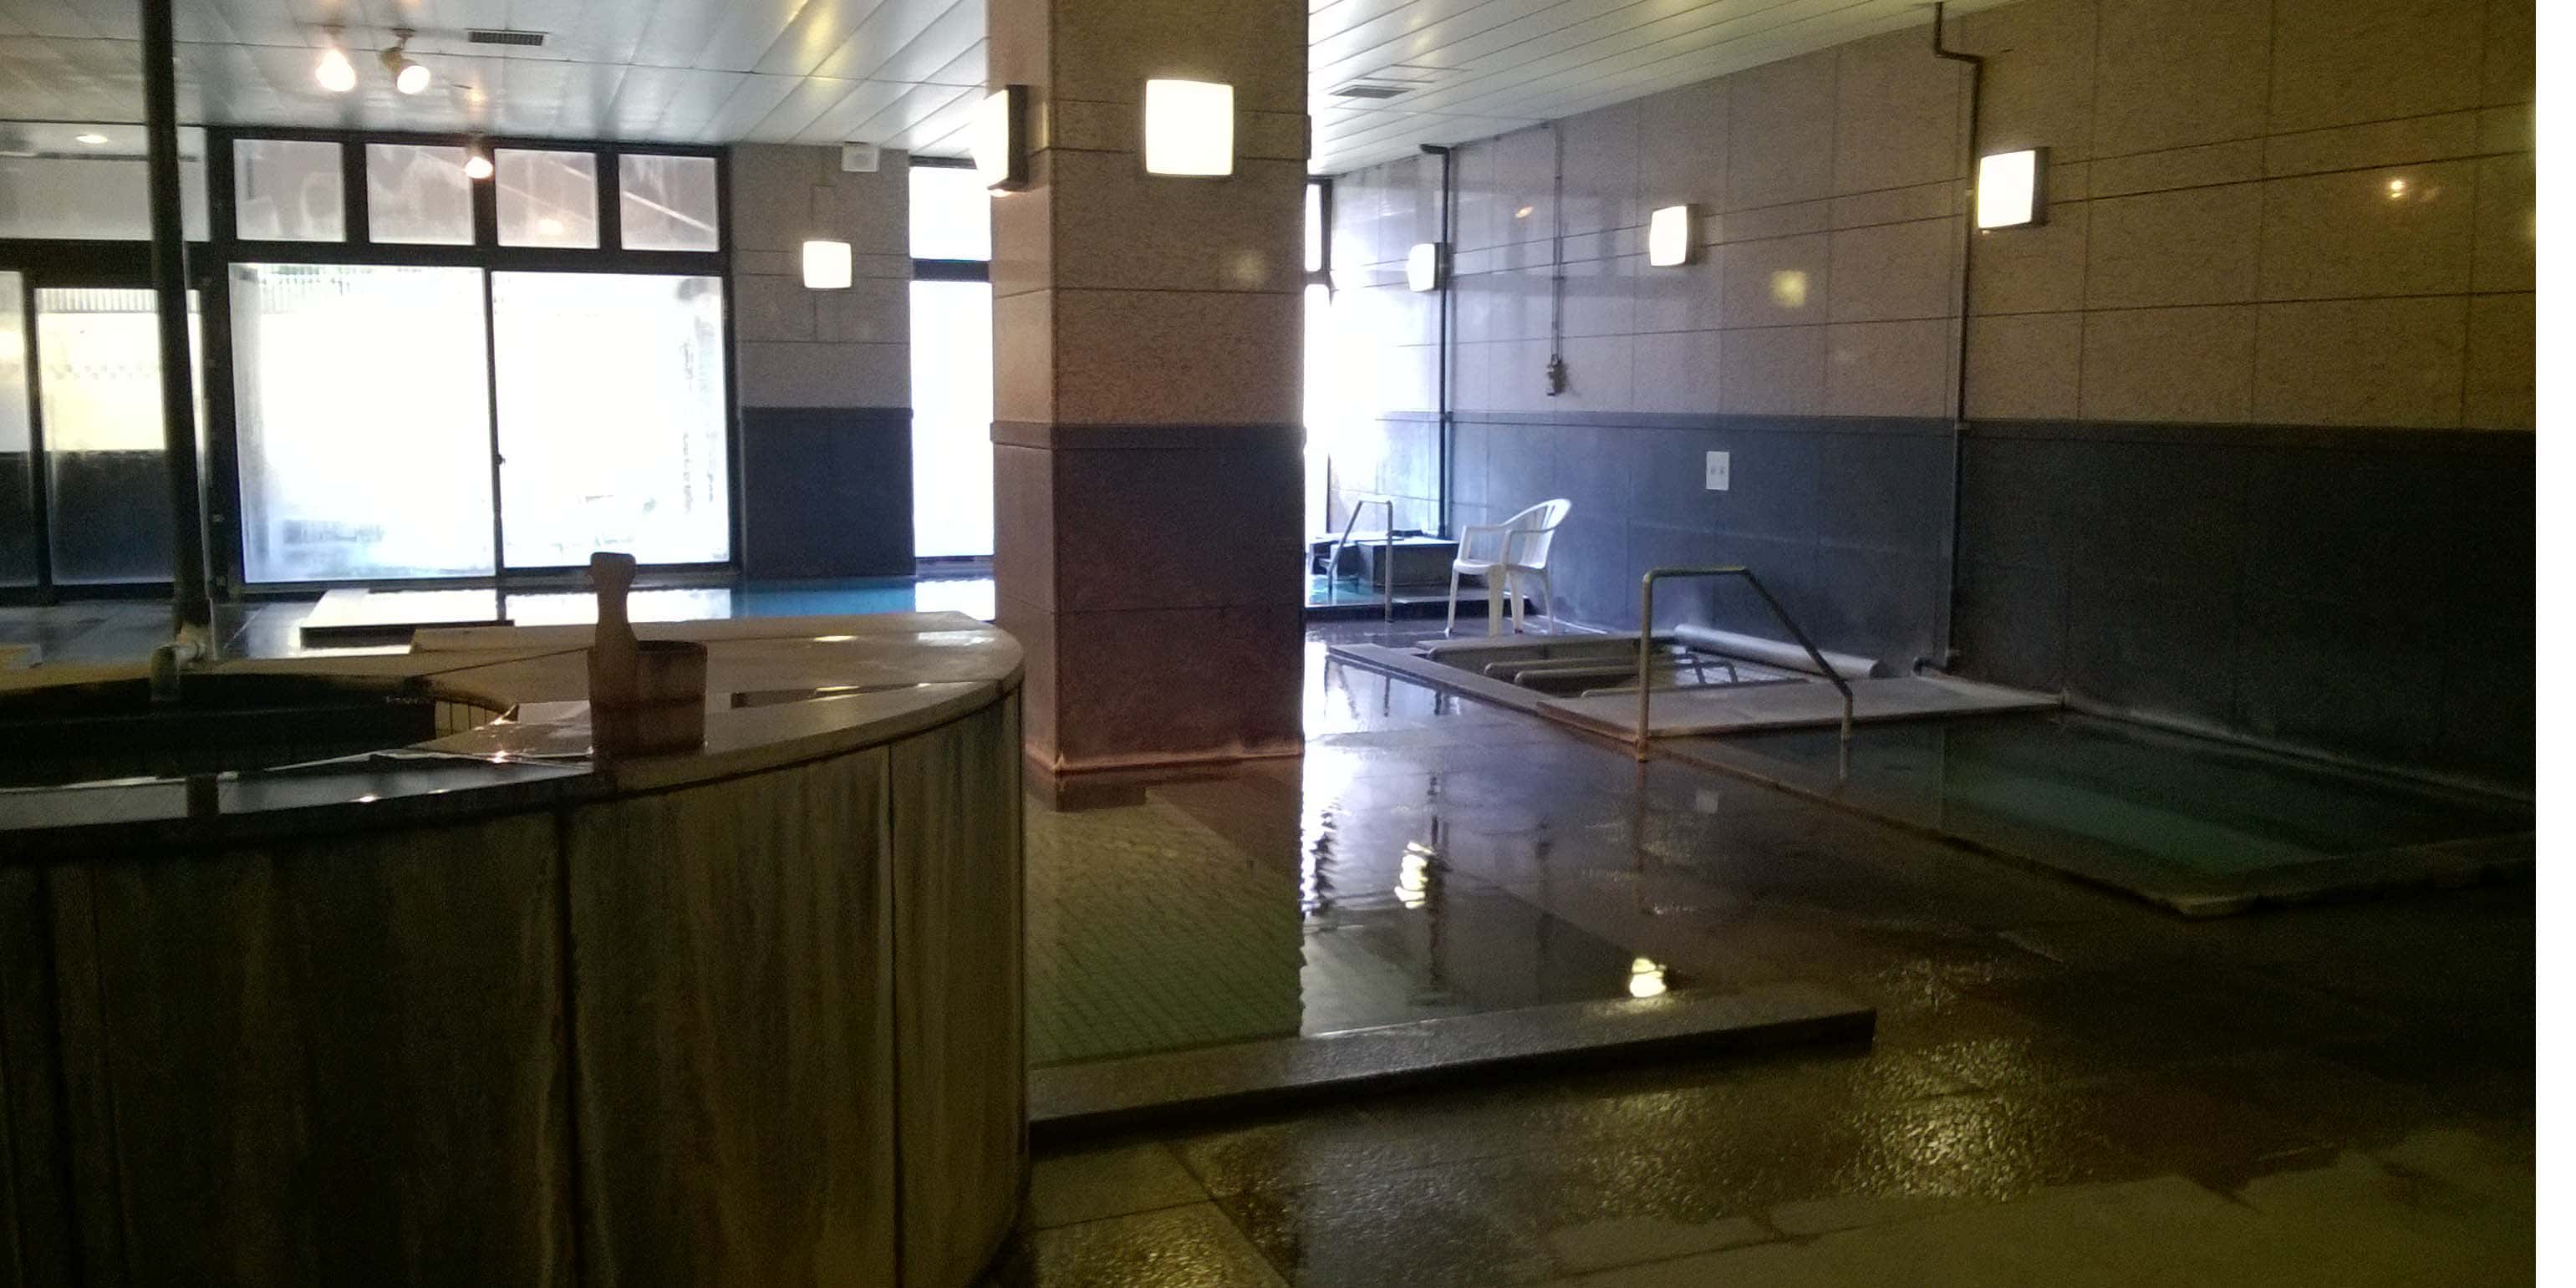 Sala com piscina para banho japonês, pilastras e muito vapor, uma casa de banho japonesa